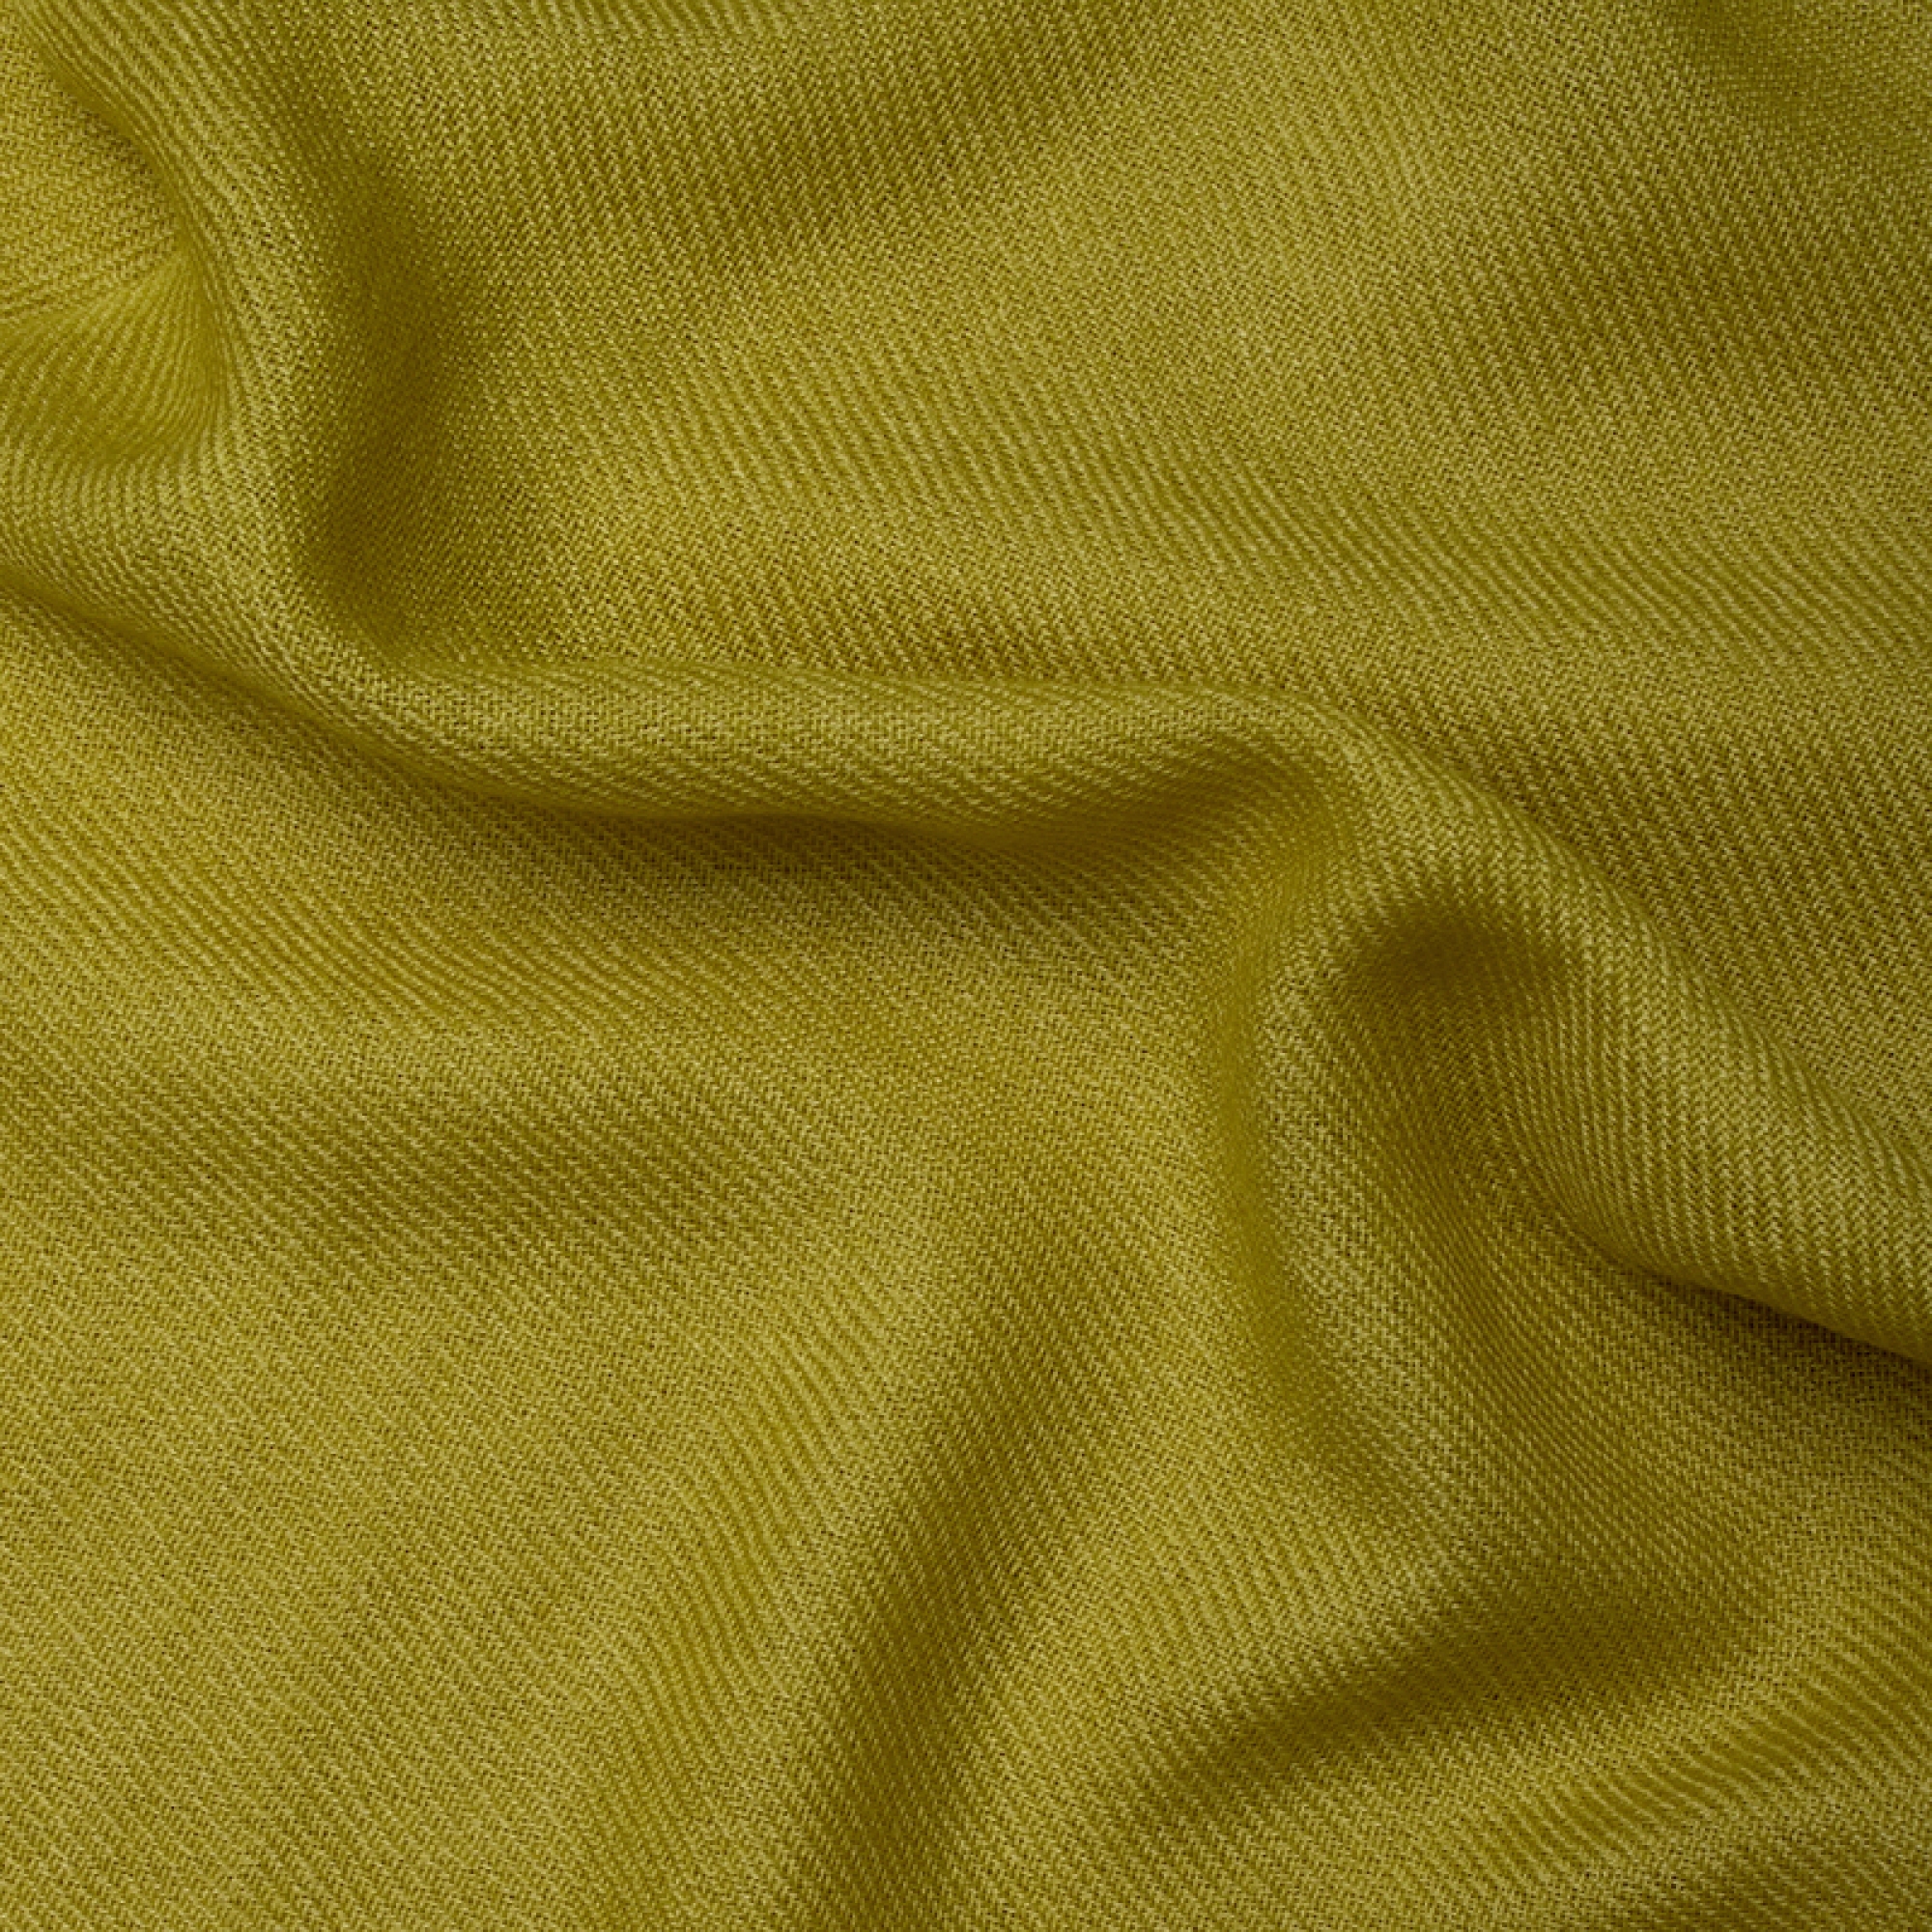 Cachemire accessoires couvertures plaids toodoo plain s 140 x 200 celeri 140 x 200 cm